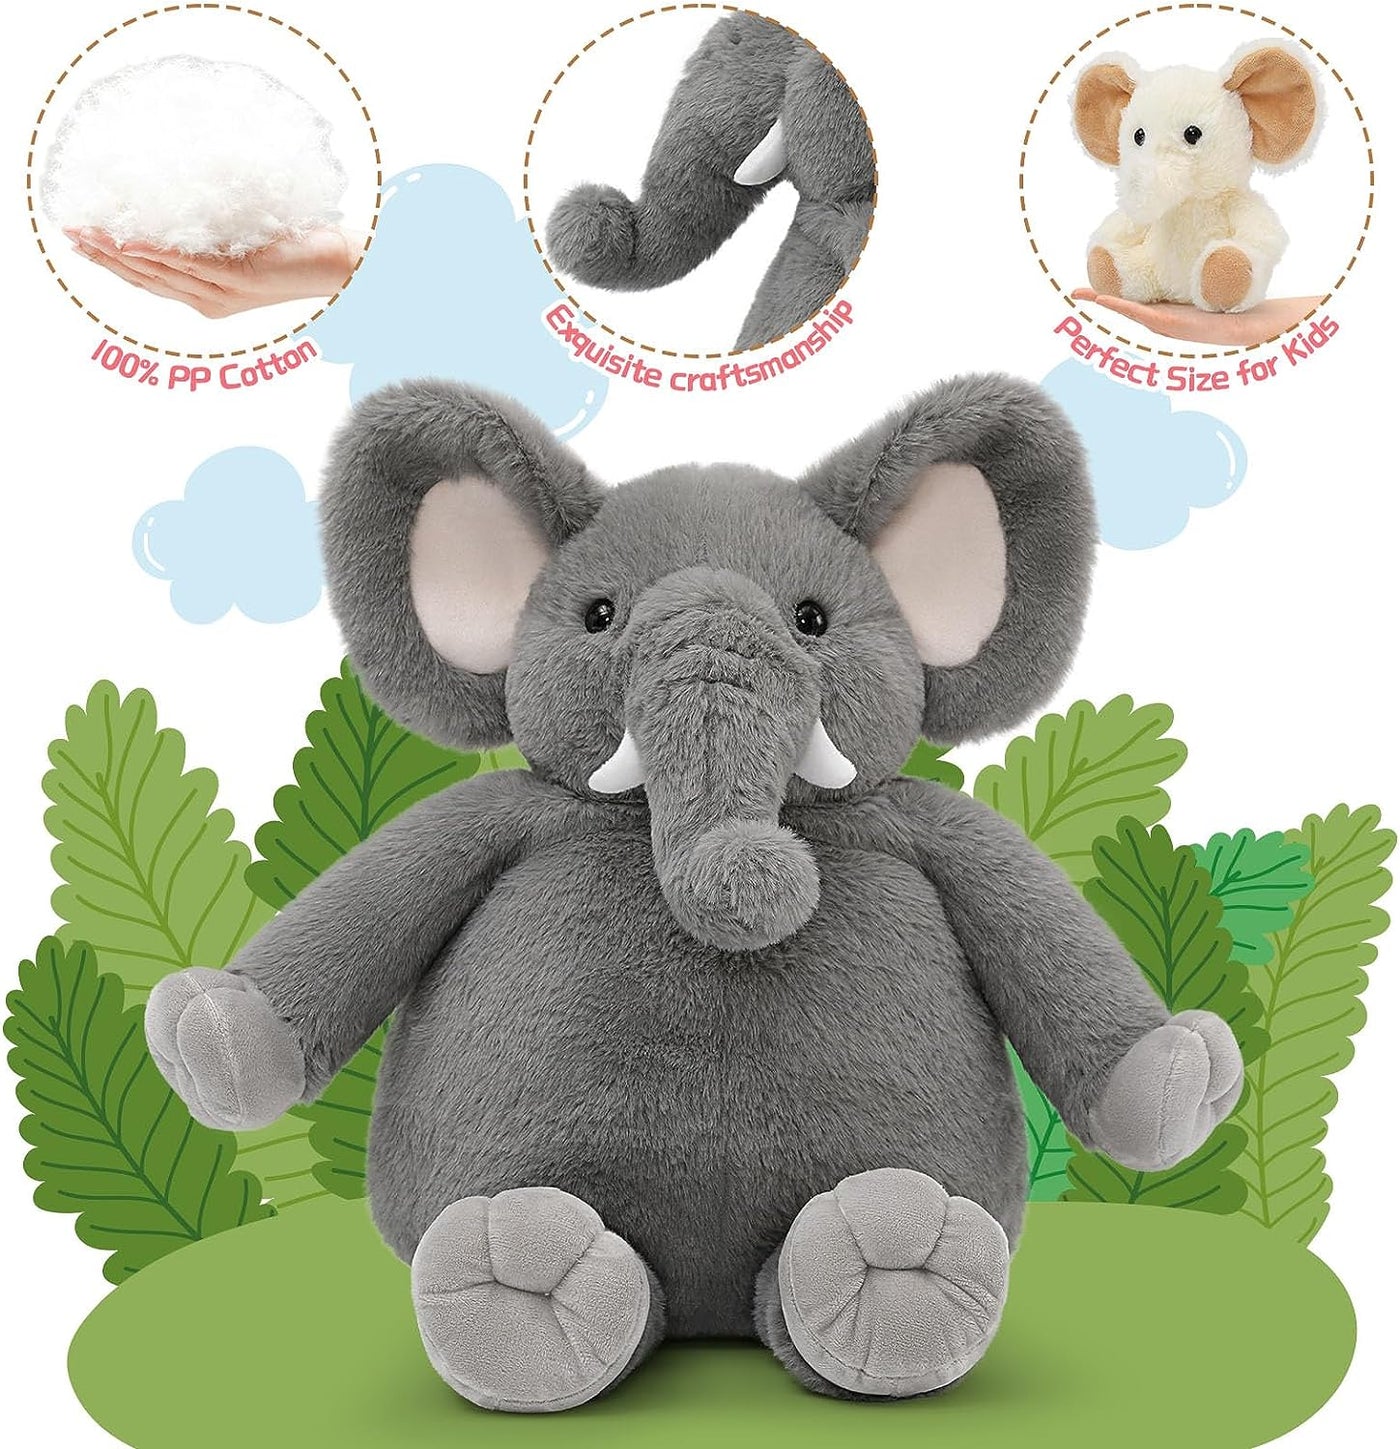 Mommy Elephant Stuffed Animal with 3 Babies Inside, 20” Elephant Plush Toy Soft Set